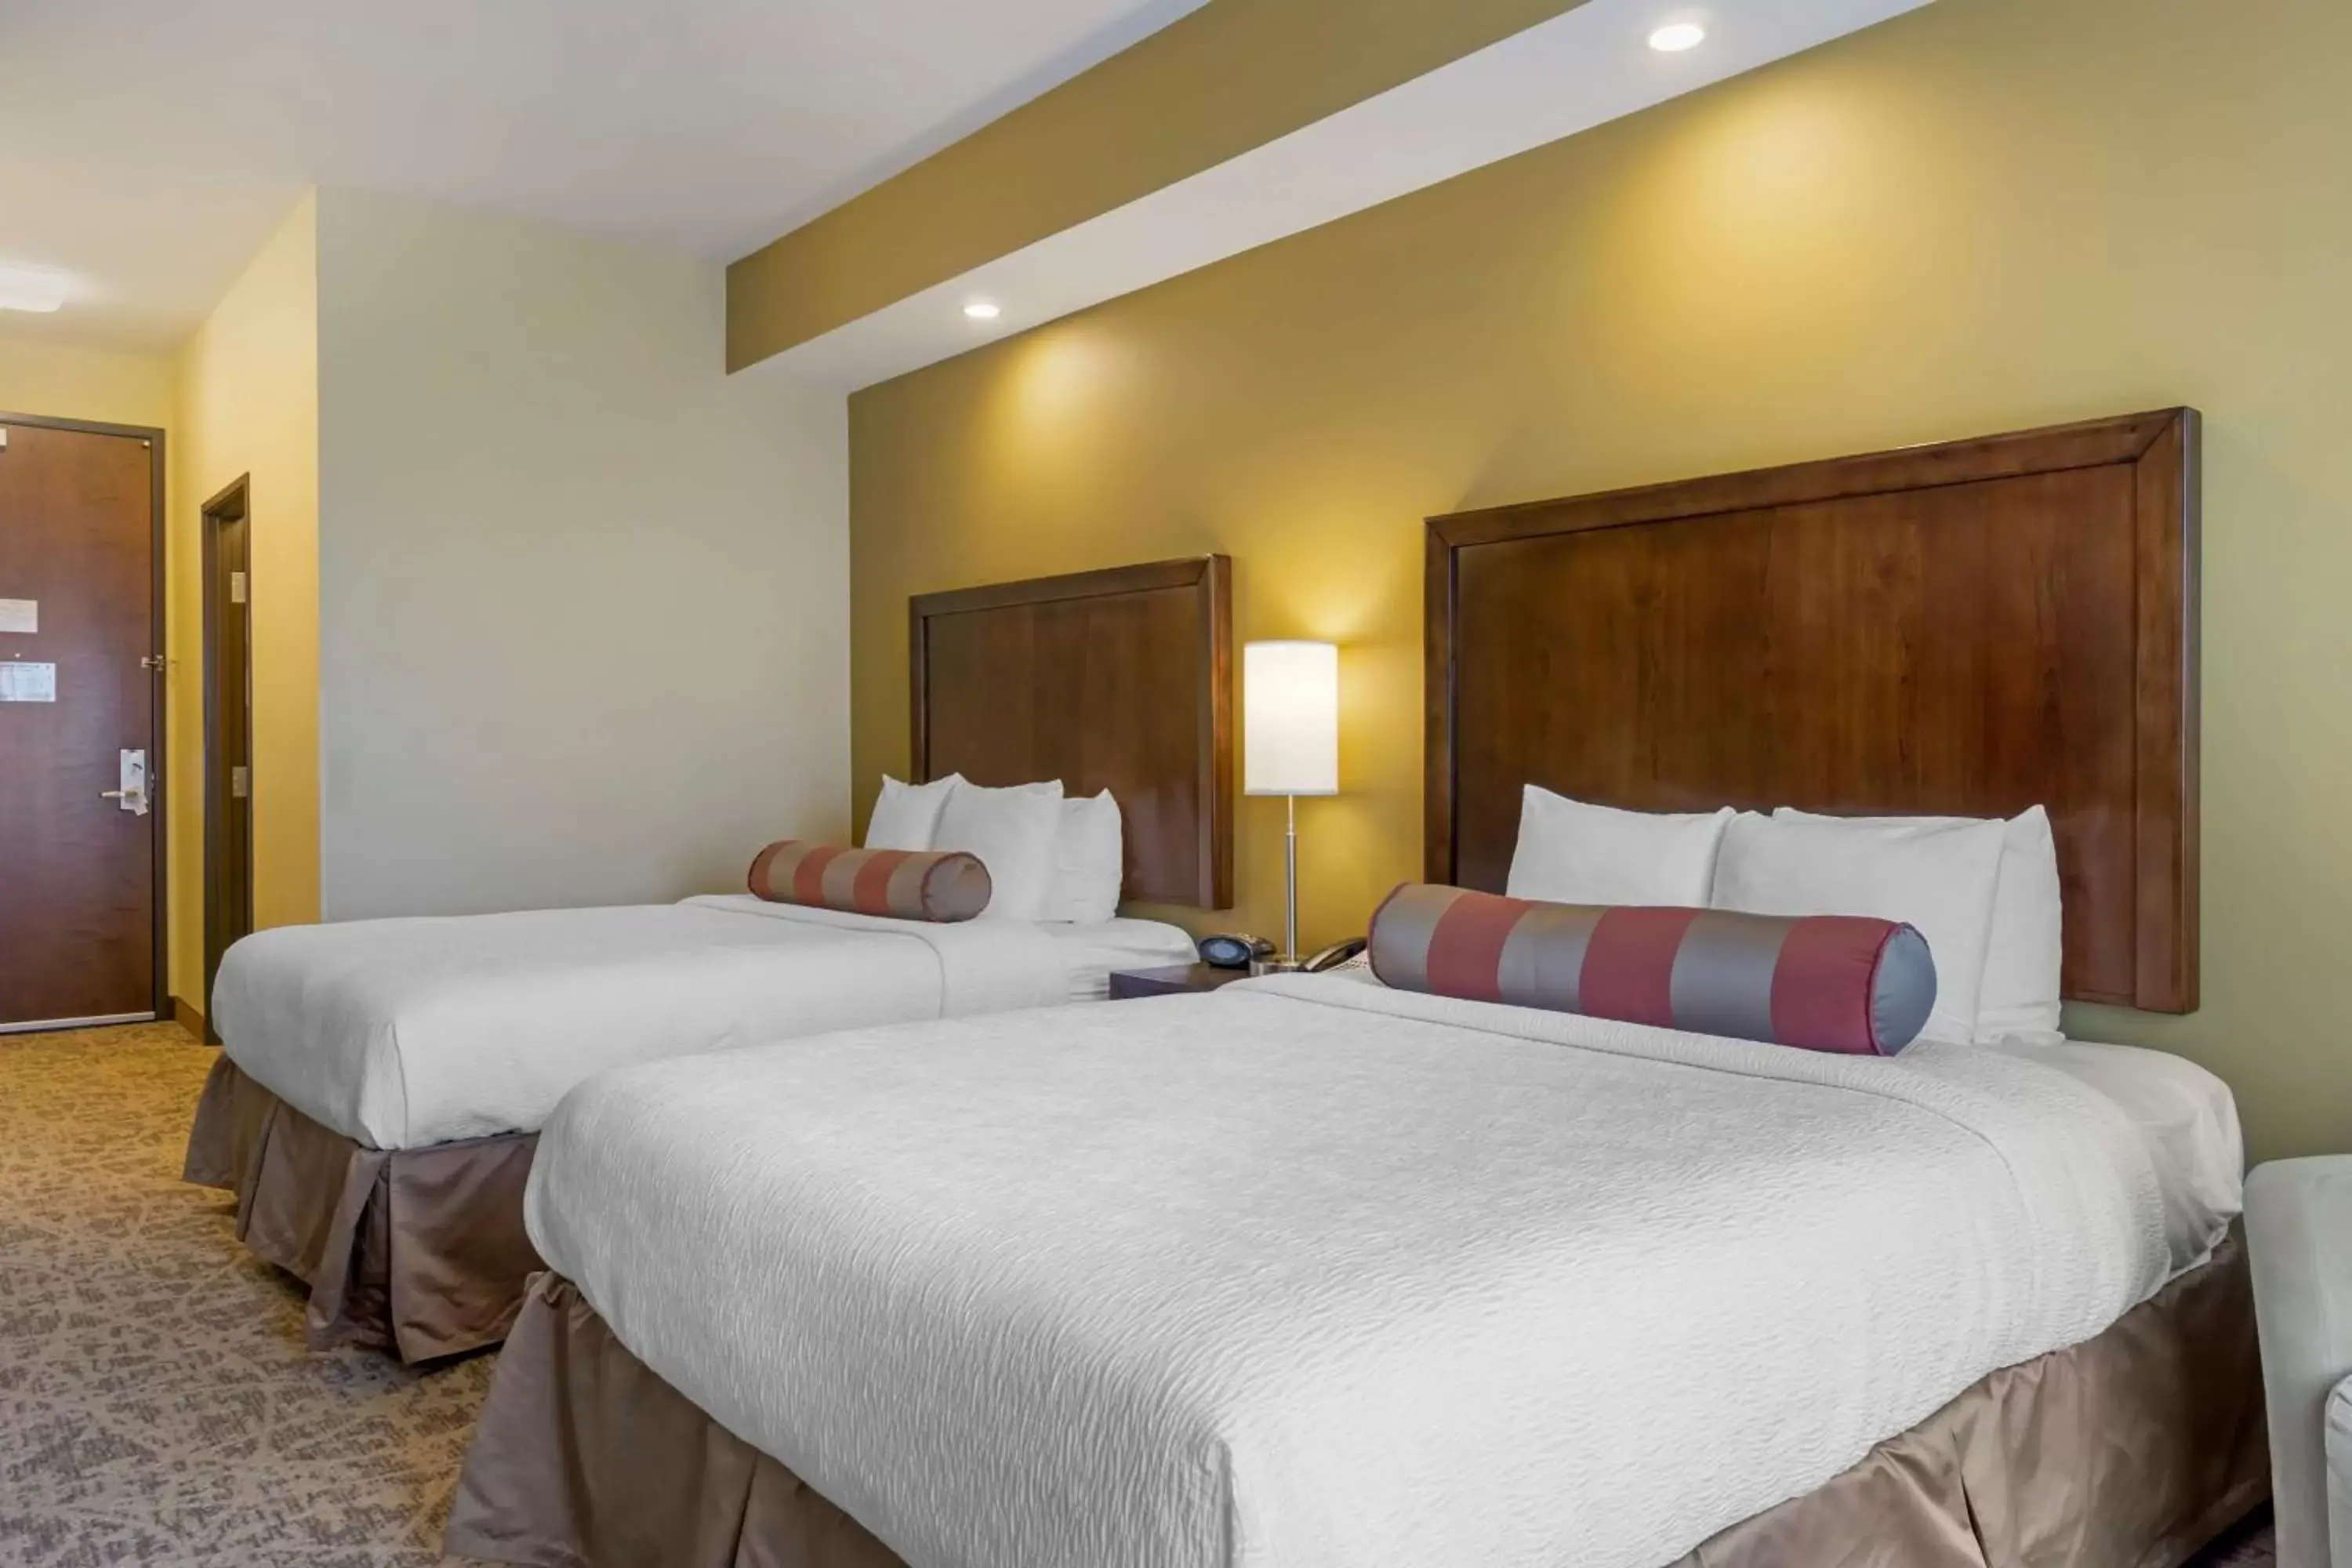 Bedroom, Bed in Best Western Plus Lacey Inn & Suites